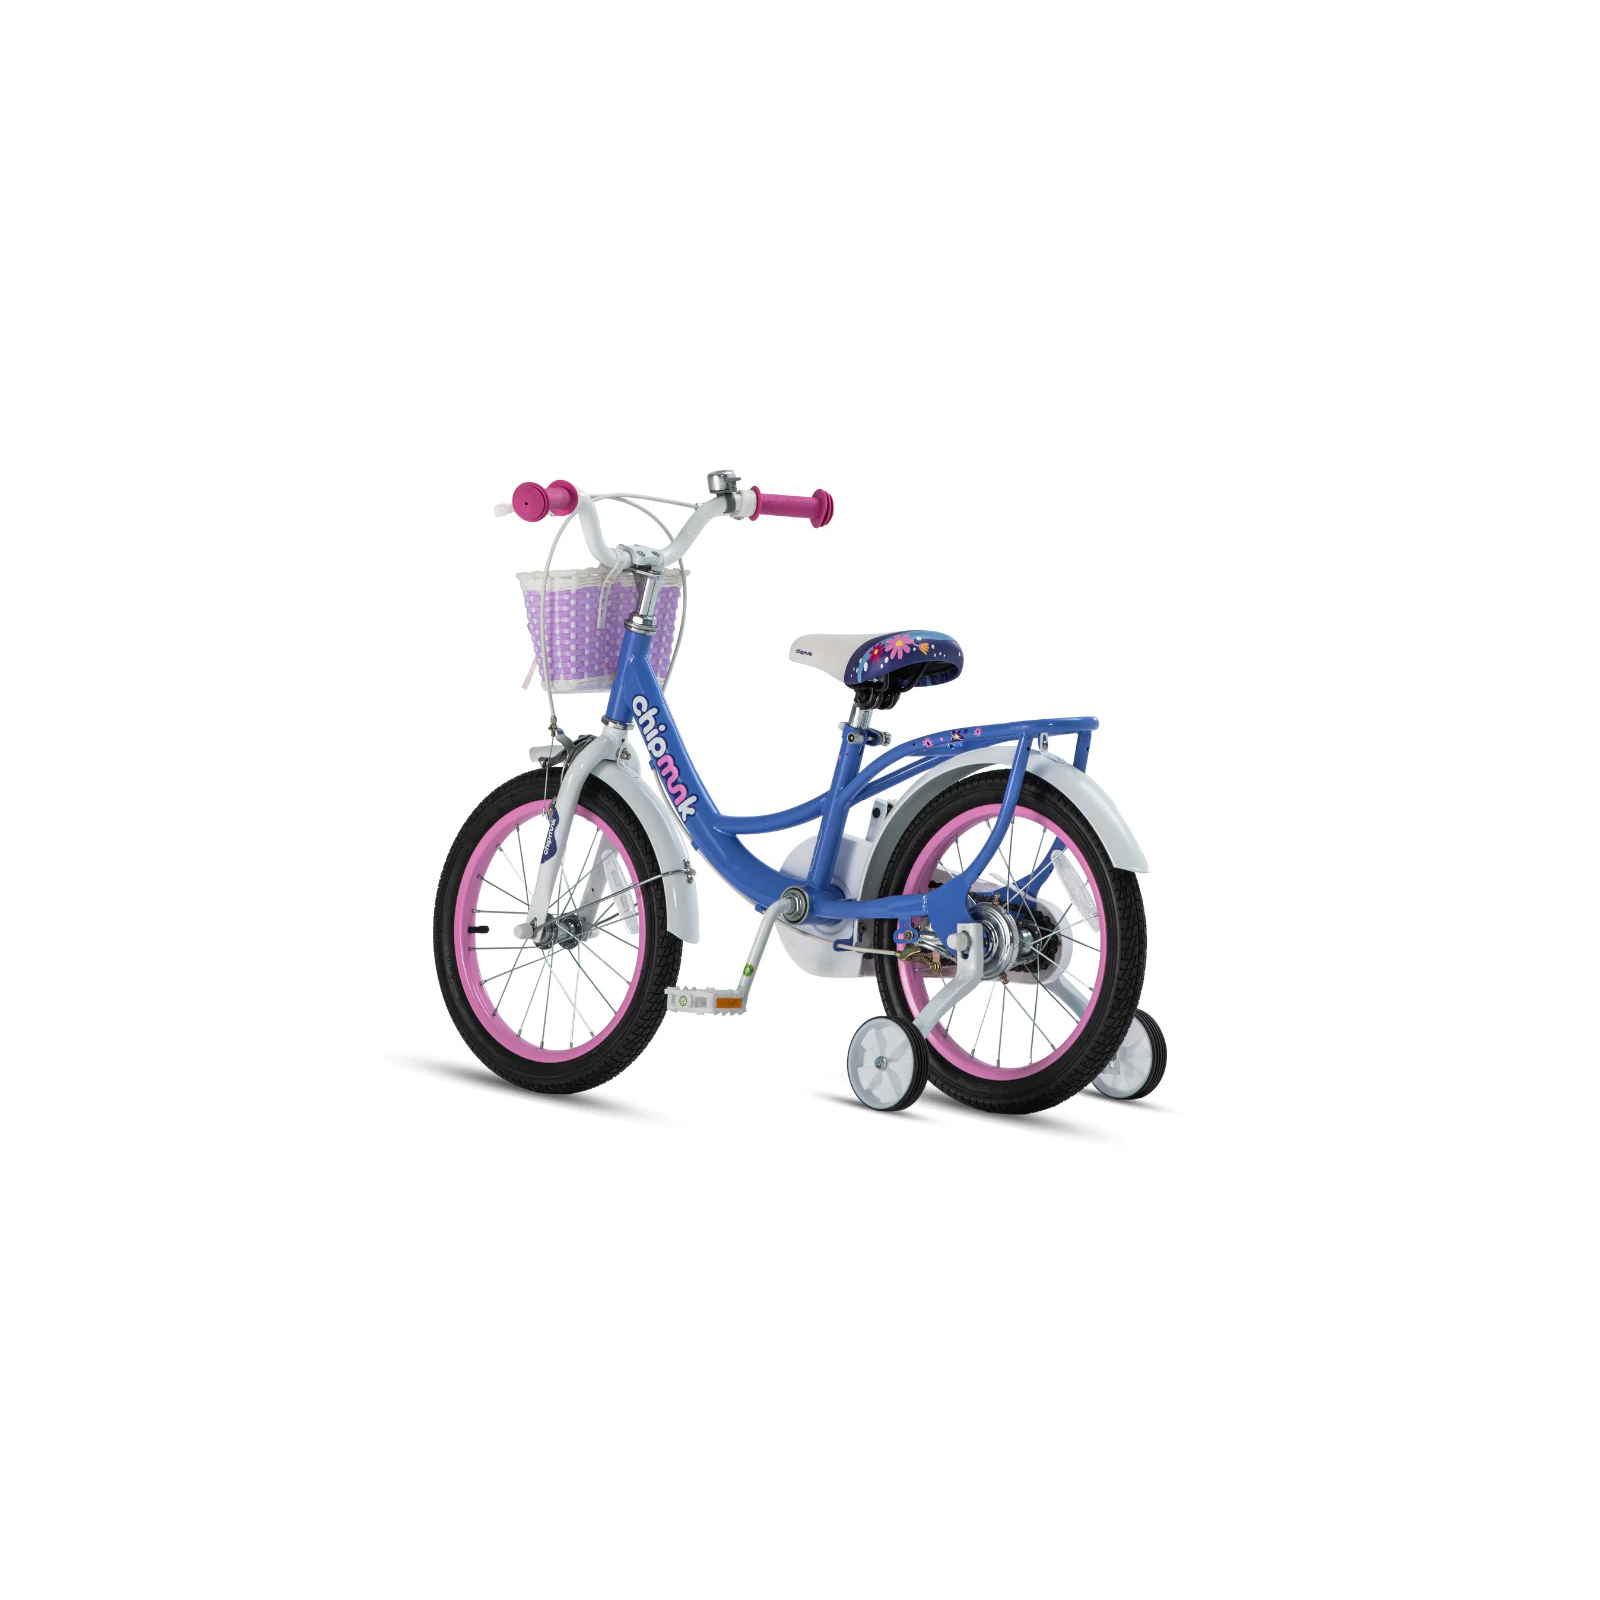 Детский велосипед Royal Baby Chipmunk Darling 18", Official UA, синий (CM18-6-blue) изображение 4